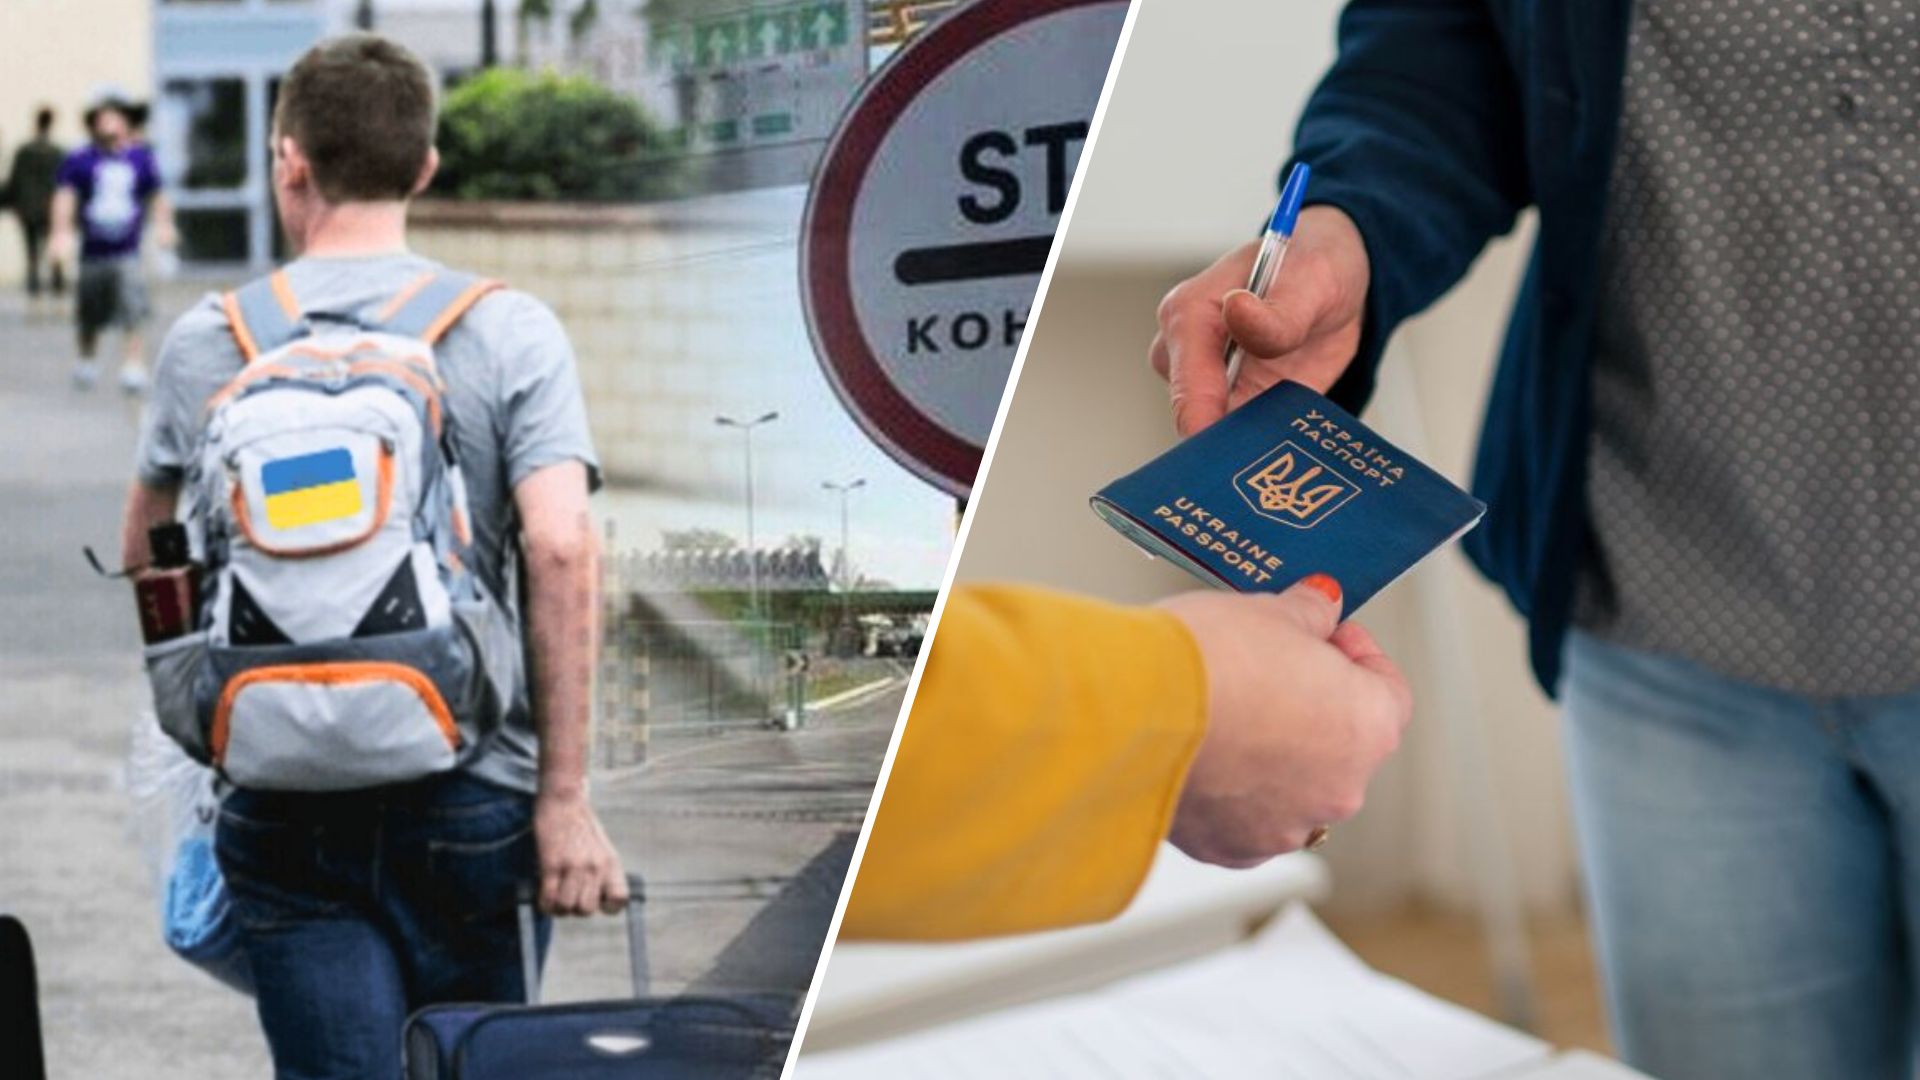 Нужен "специальный" документ: какой "сюрприз" ждет украинских мужчин за границей